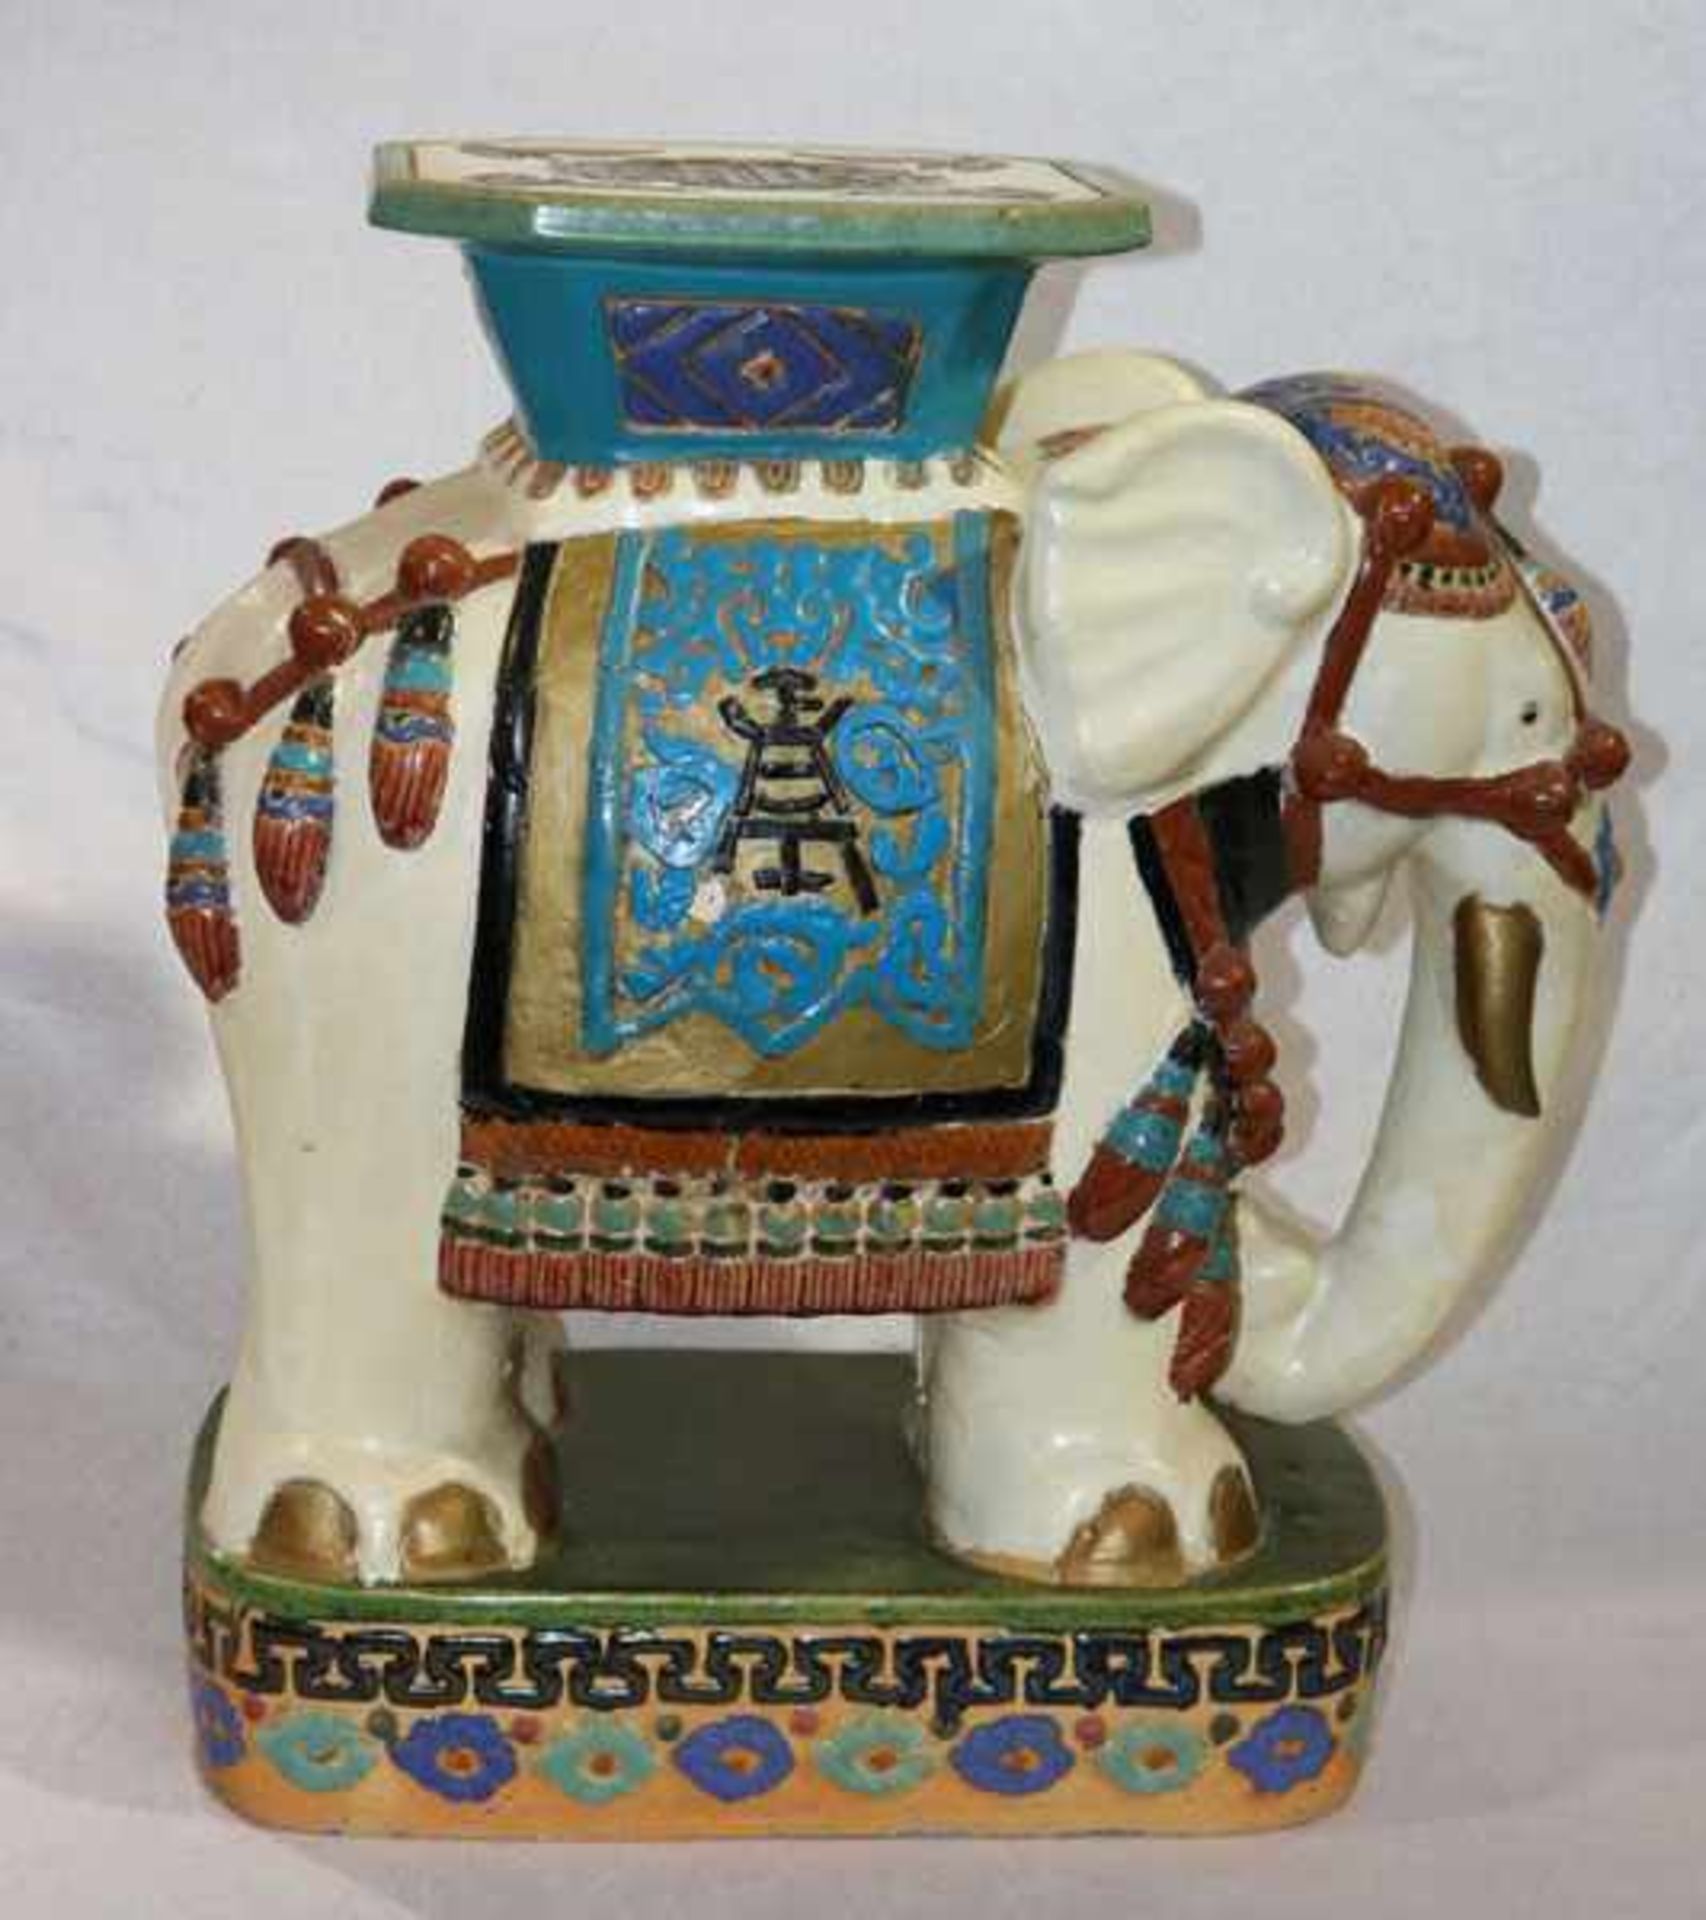 Keramik Blumenhocker 'Elefant', farbig glasiert, H 59 cm, B 28 cm, T 54 cm, leichte Gebrauchsspuren